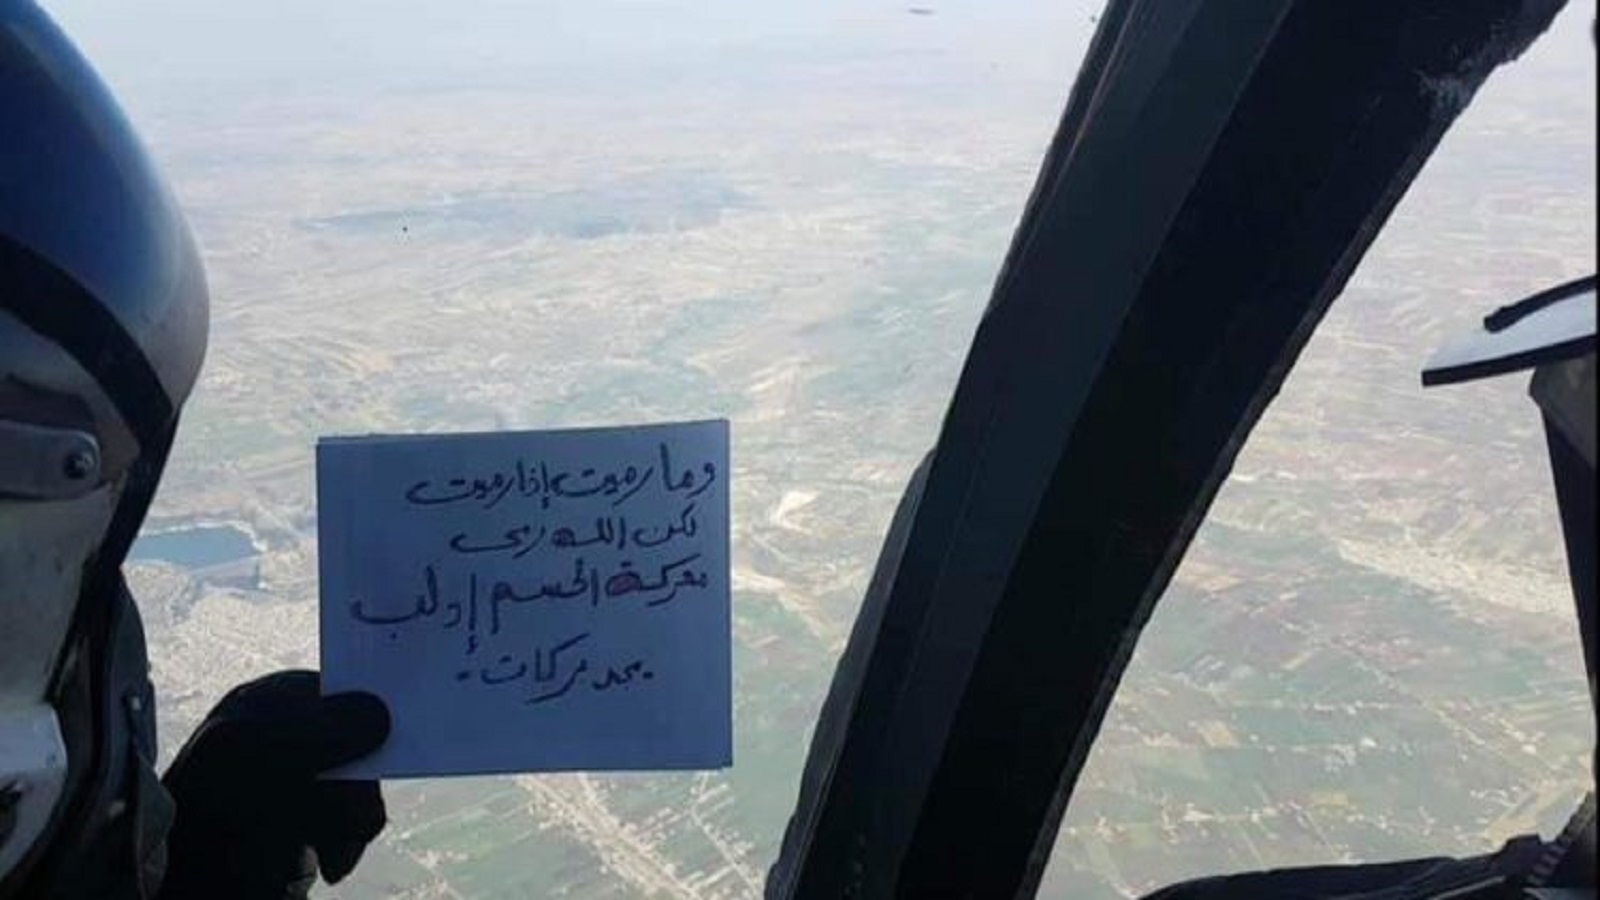 طيارو النظام يستعينون بالقرآن لـ"الحسم" في إدلب